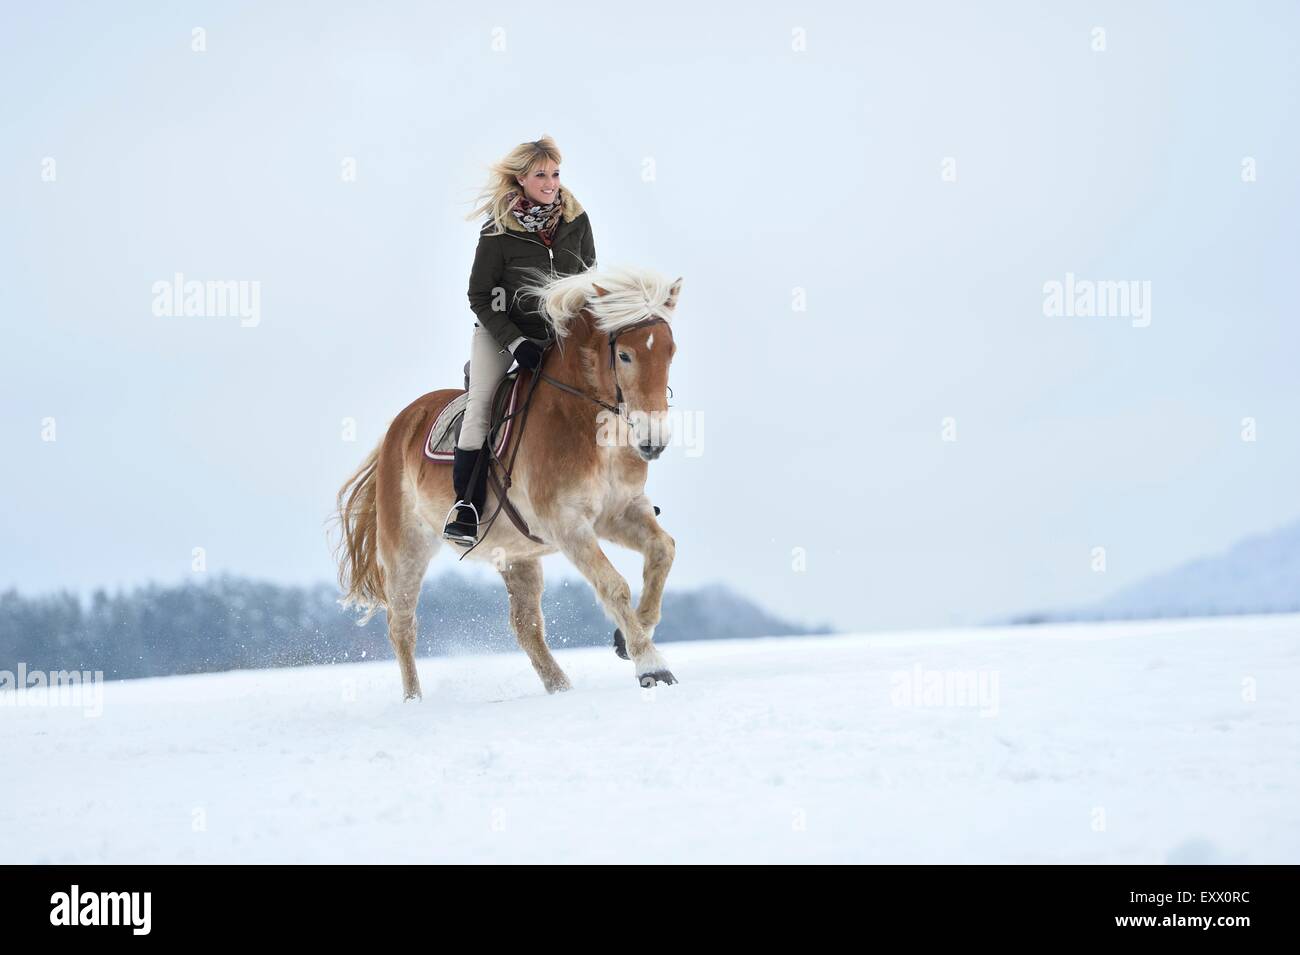 Jeune femme équitation cheval Haflinger dans la neige Banque D'Images